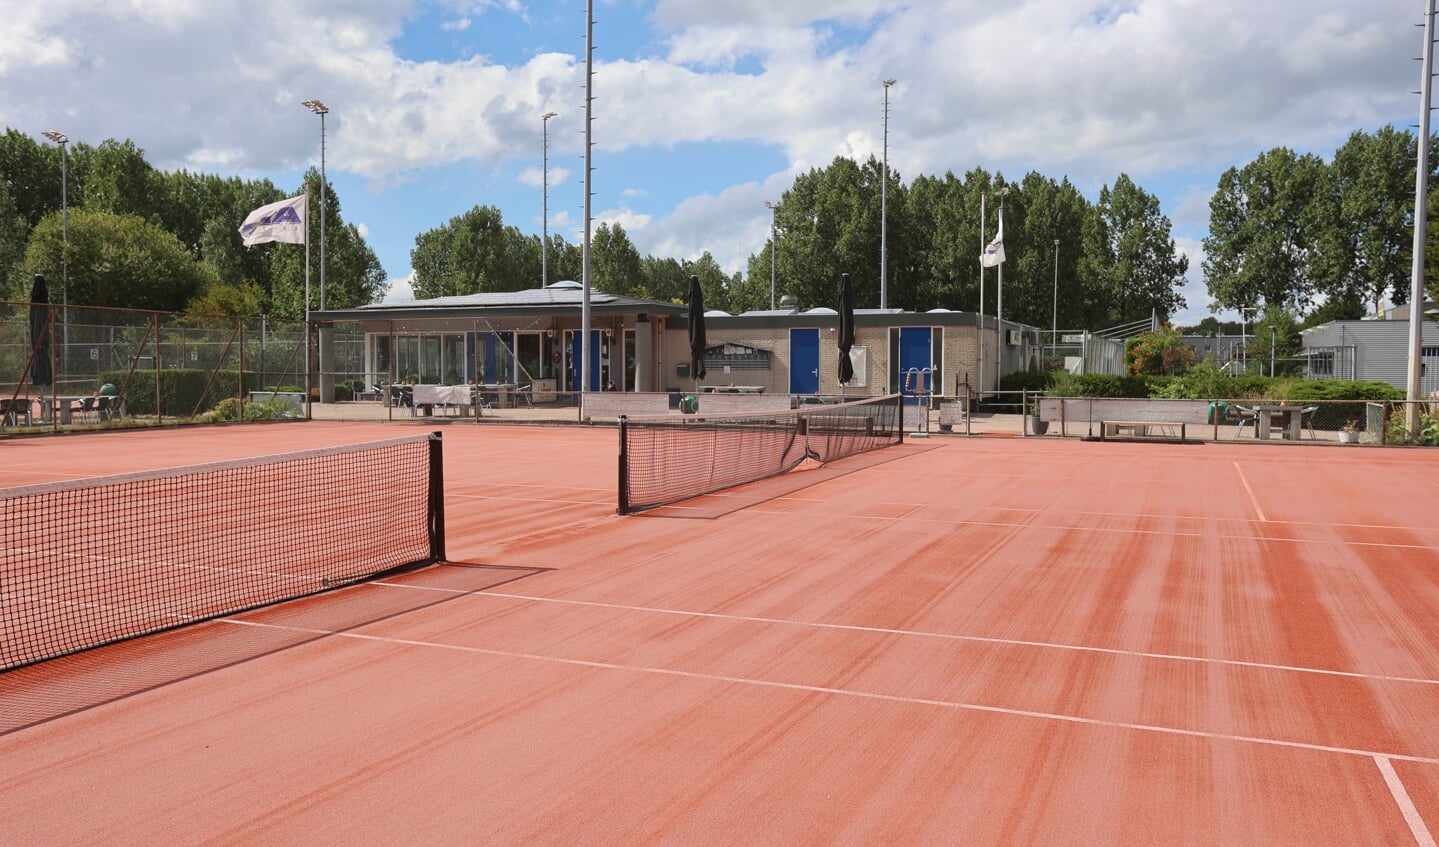 Het tennispark van ATC Buiten krijgt een opknapbeurt. (Foto: Fred Rotgans)